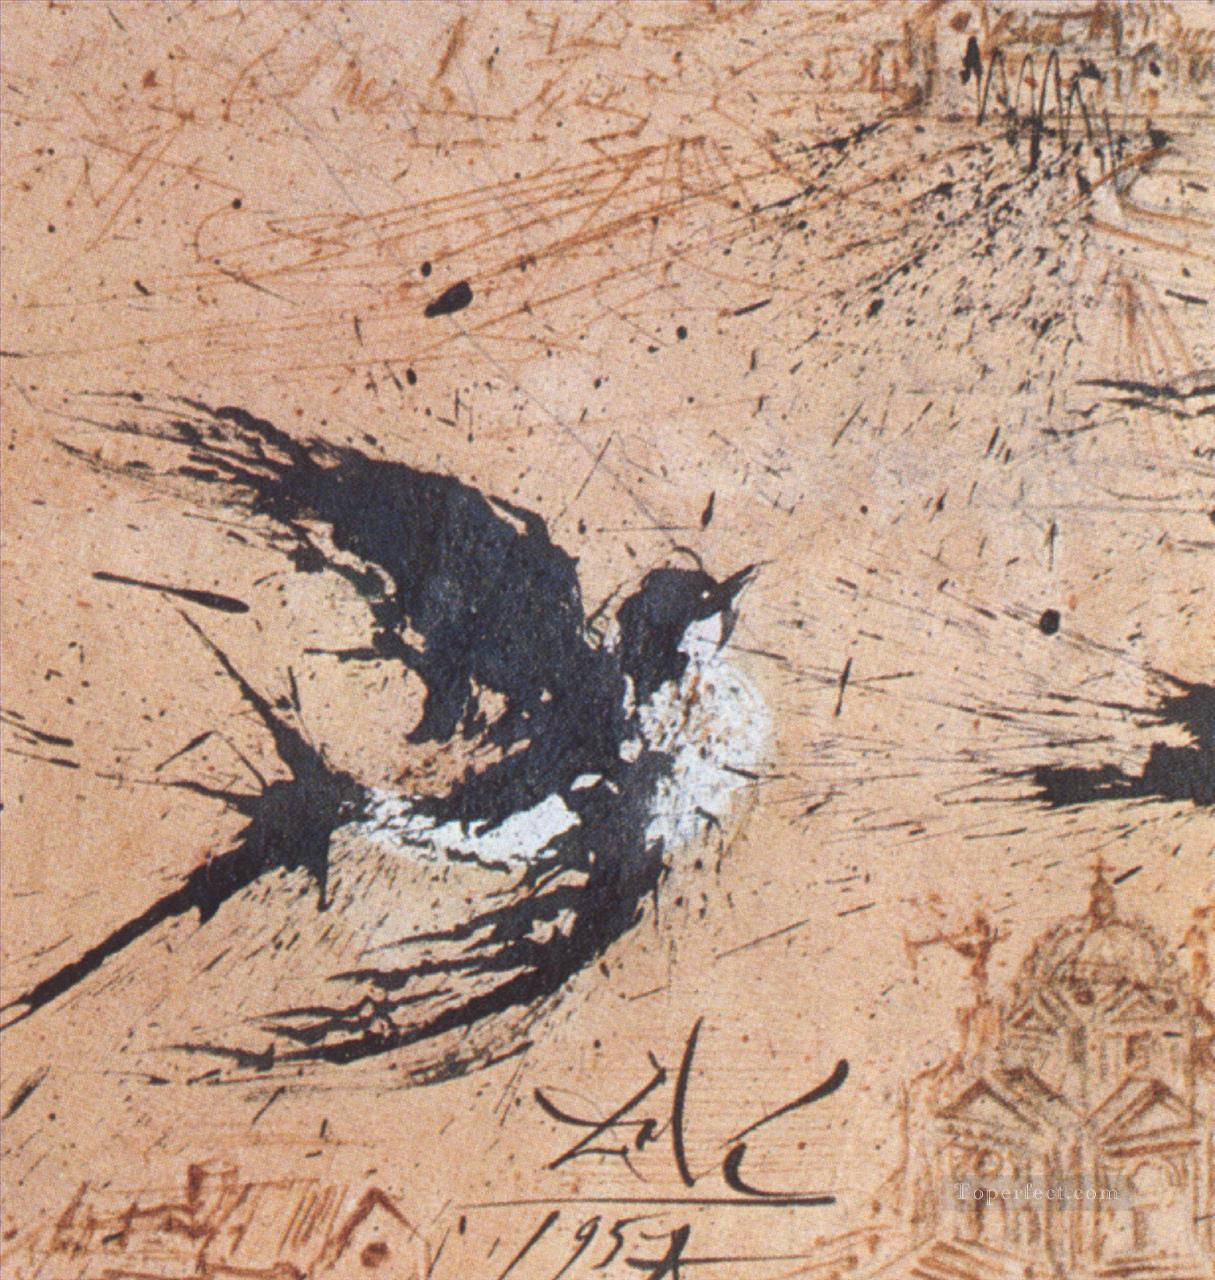 ツバメのシュルレアリスム油絵